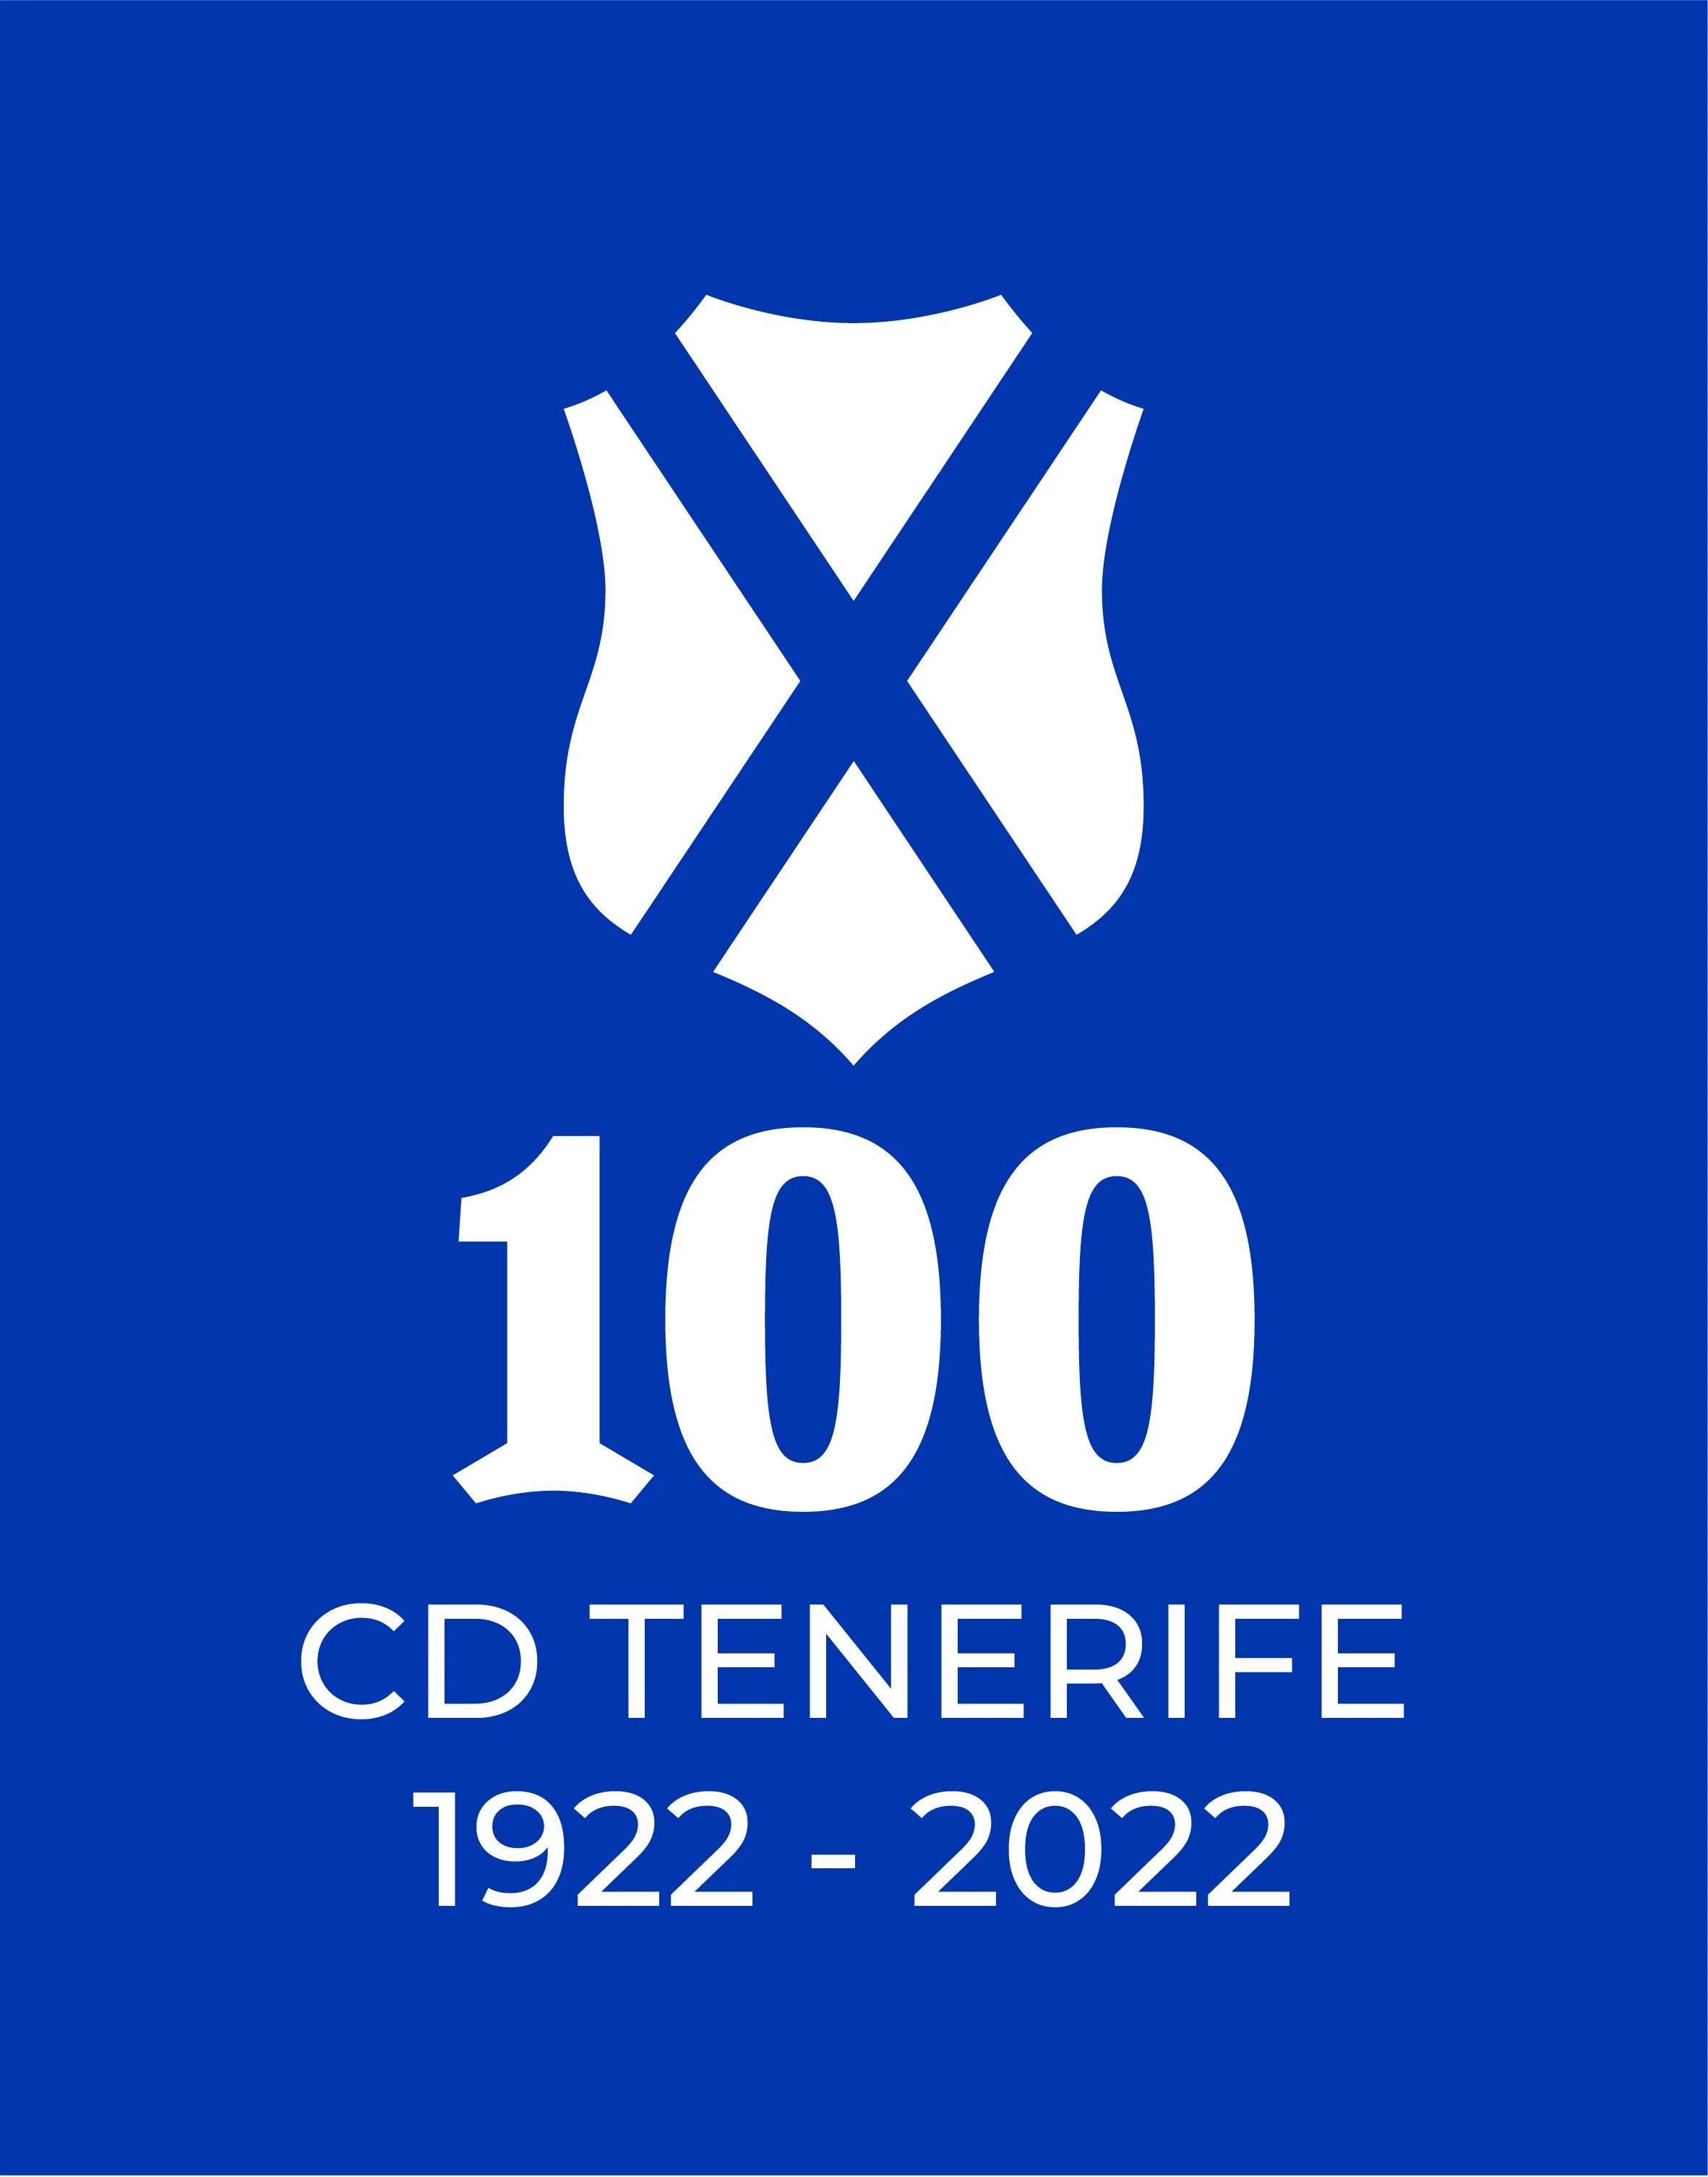 Centenario CD Tenerife